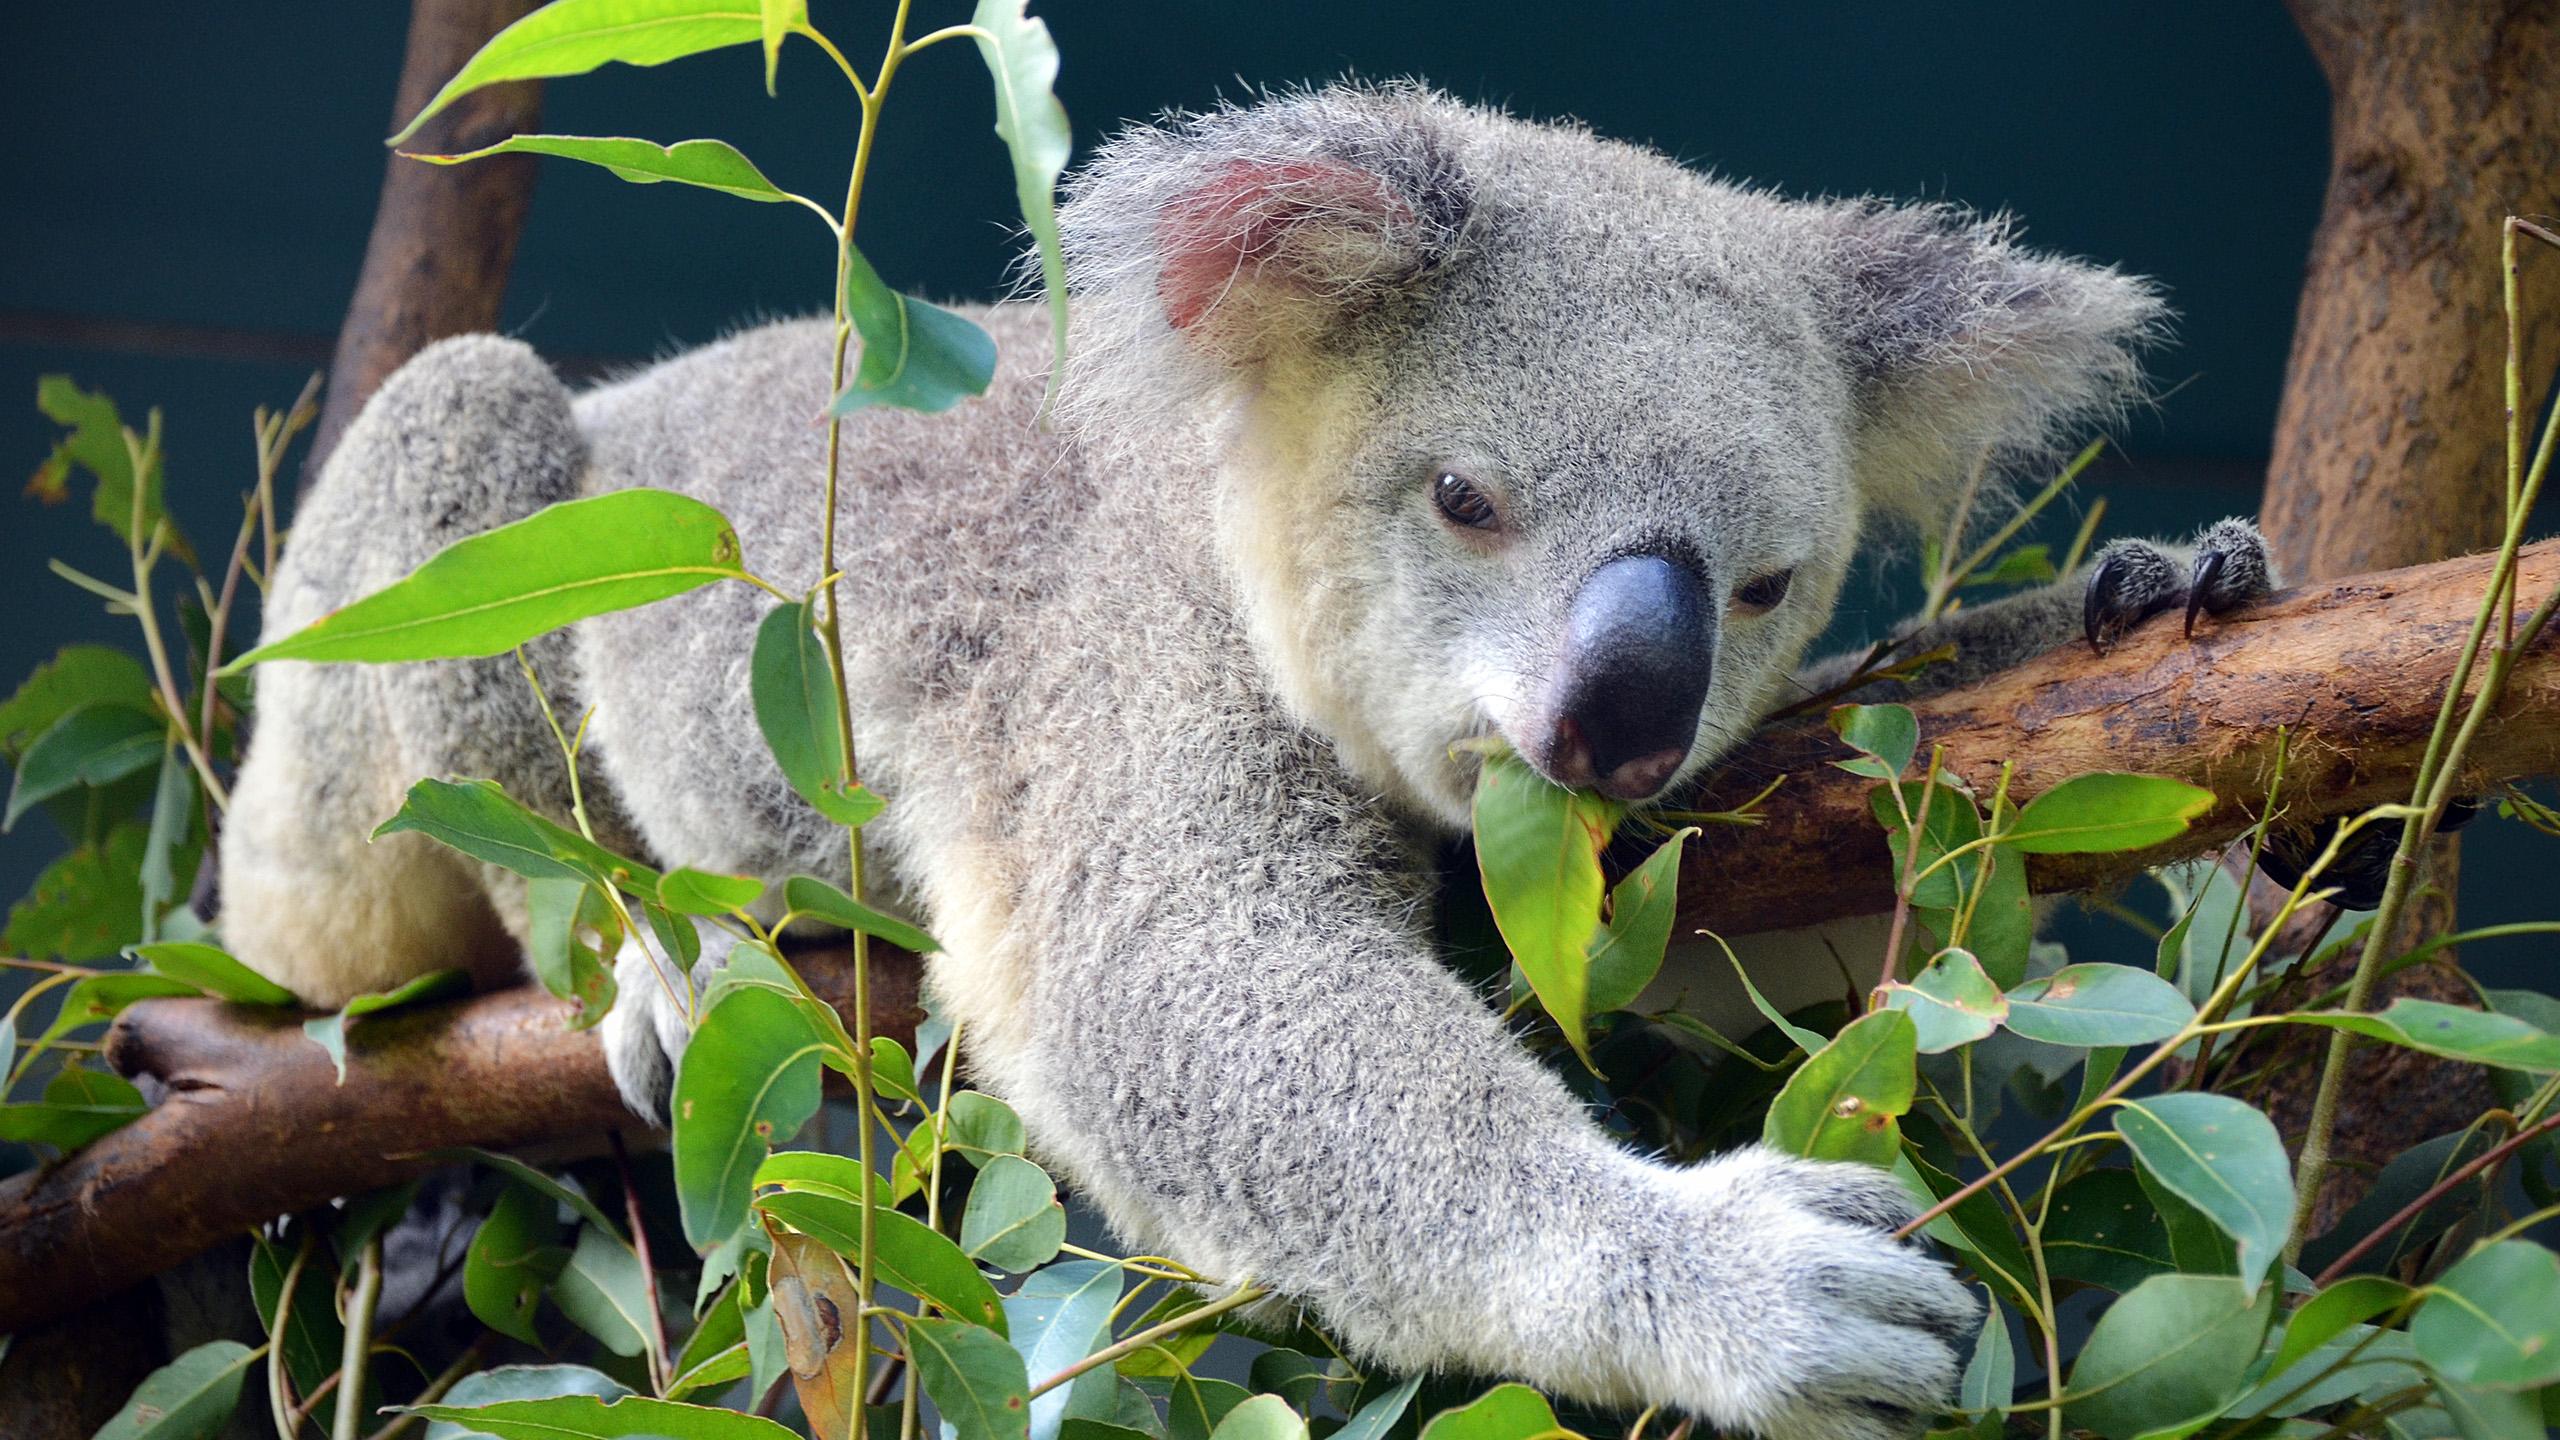 Контрацепция коал спасла эвкалипт от вымирания